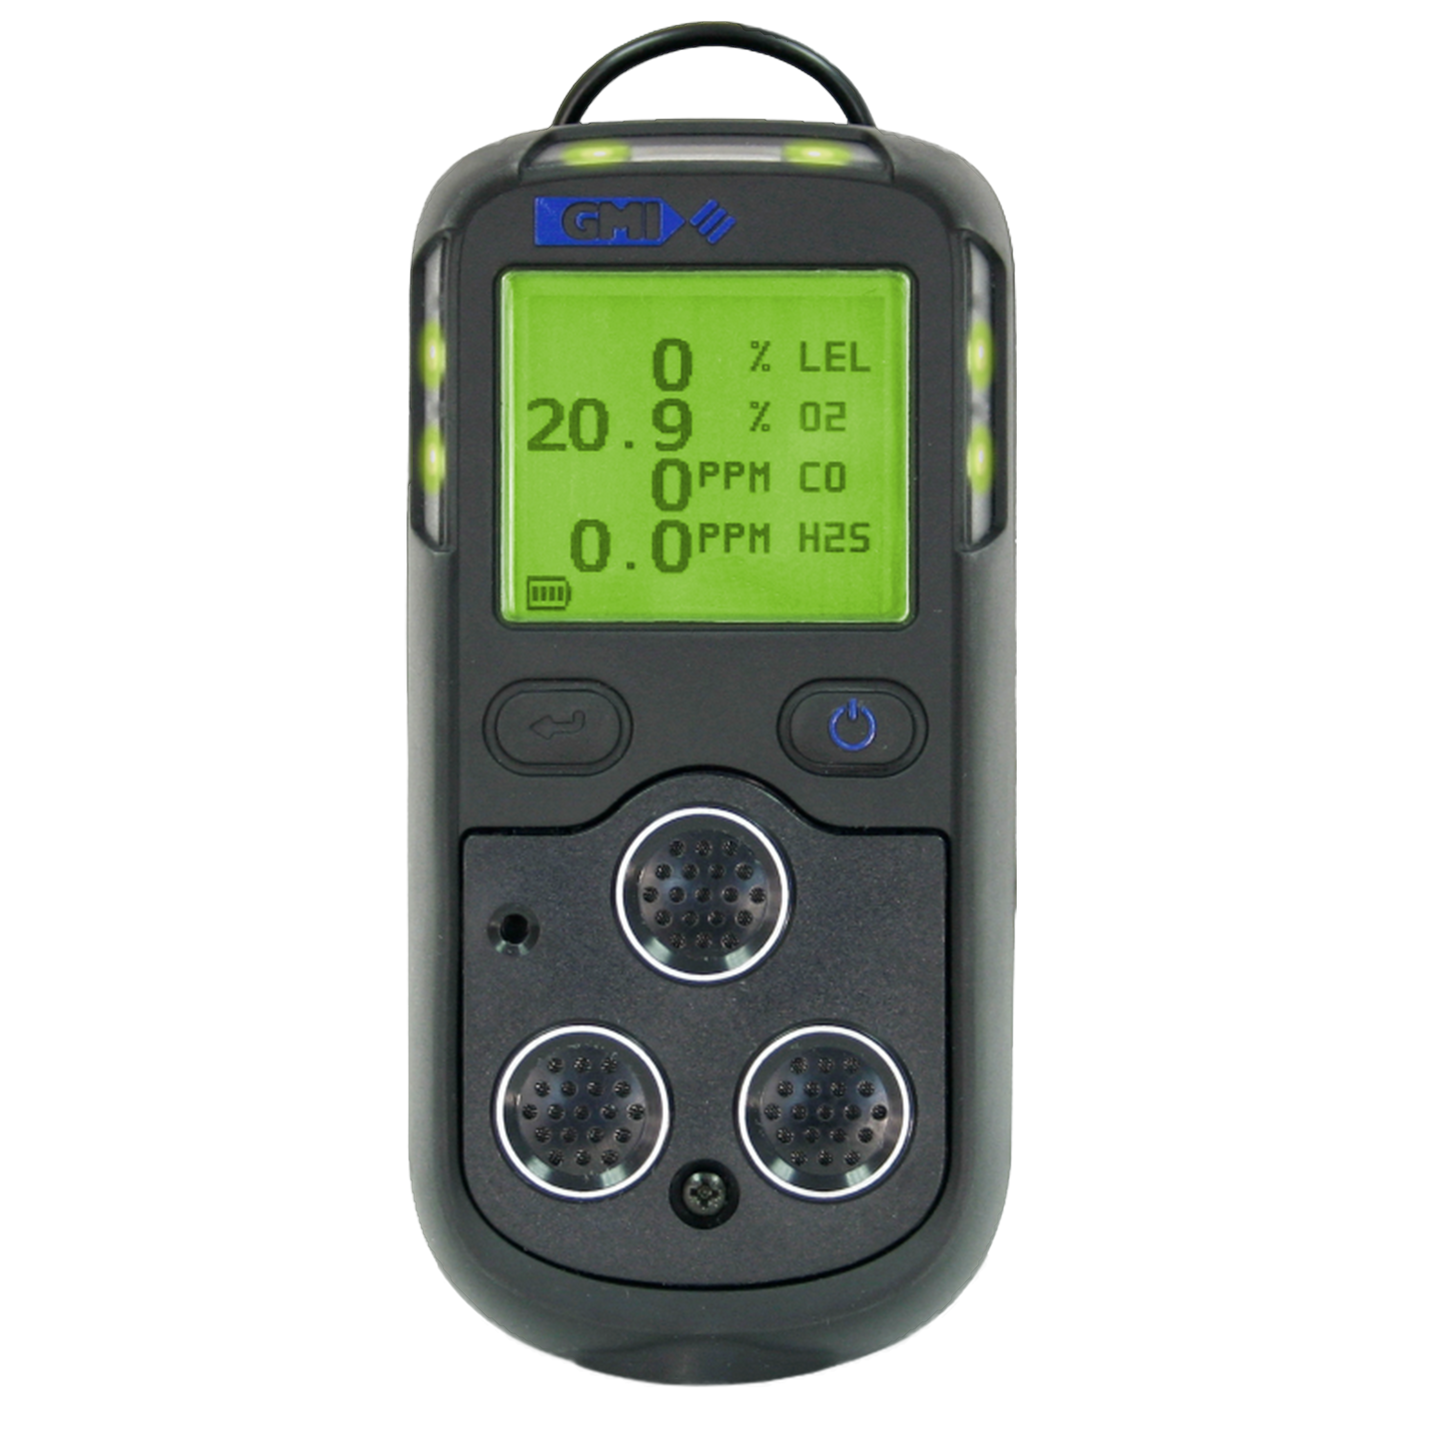 PS200 Multi-Gas Monitor